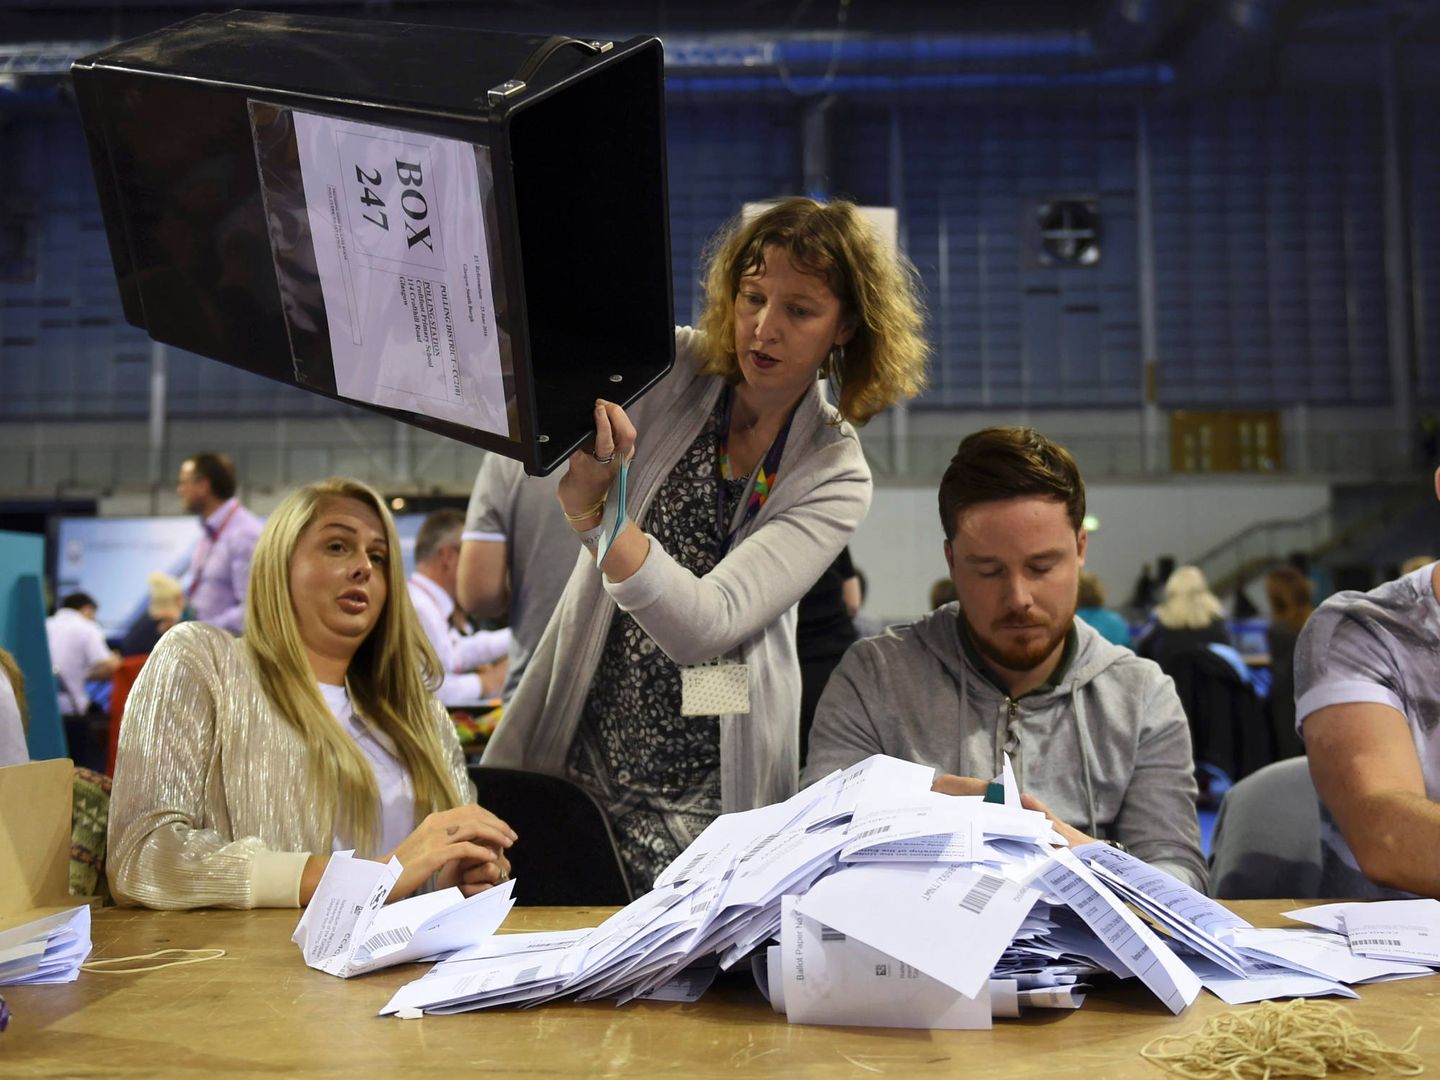 Recuento de votos en un colegio electoral tras el referéndum del Brexit, en Glasgow, Escocia, el 23 de junio de 2016. (Reuters) 